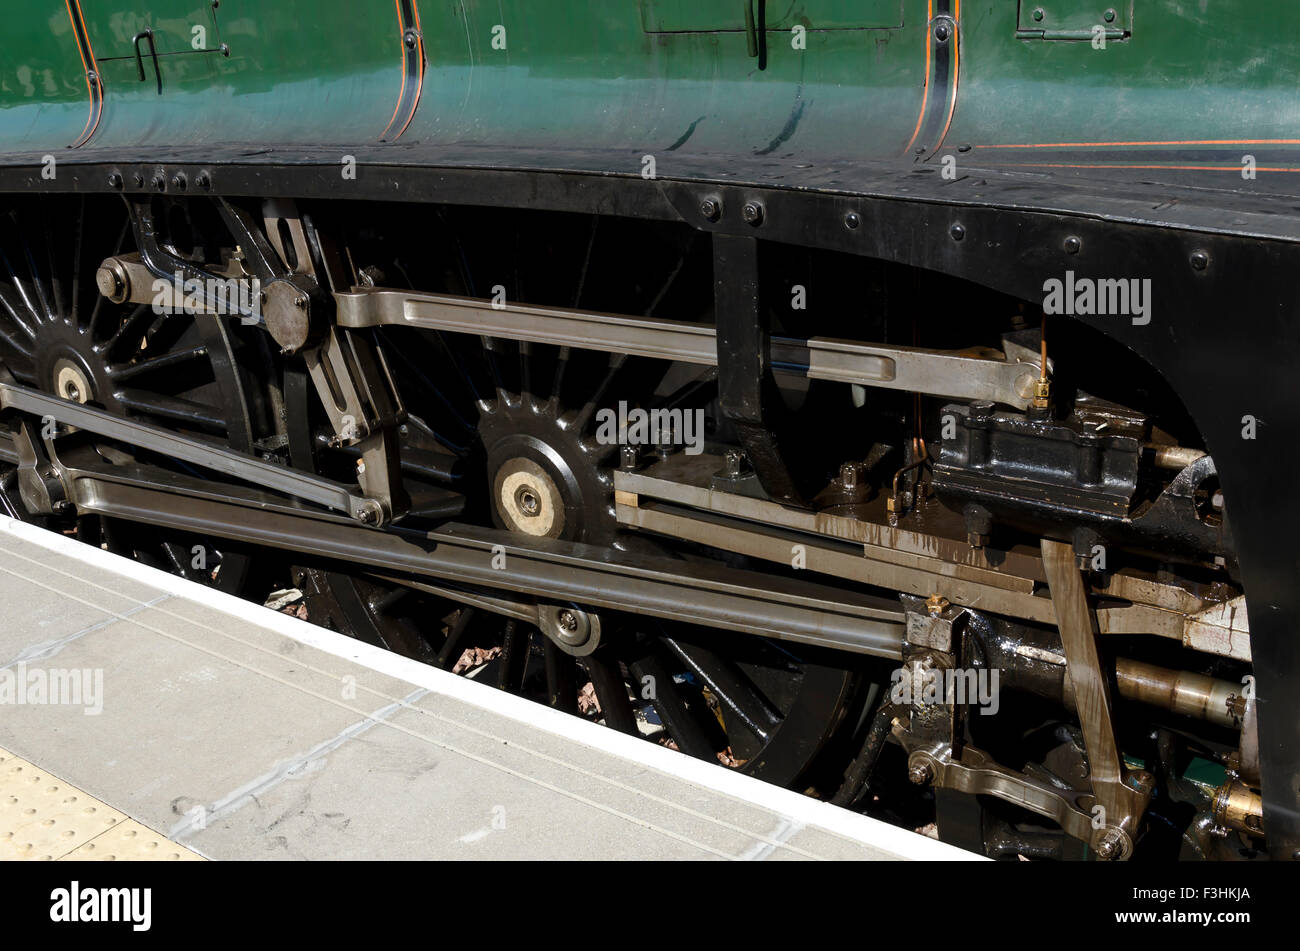 L'A4 locomotiva a vapore 60009 'Unione del Sud Africa' a Tweedbank nei confini Scozzesi dopo la trazione di un treno da Edimburgo. Foto Stock